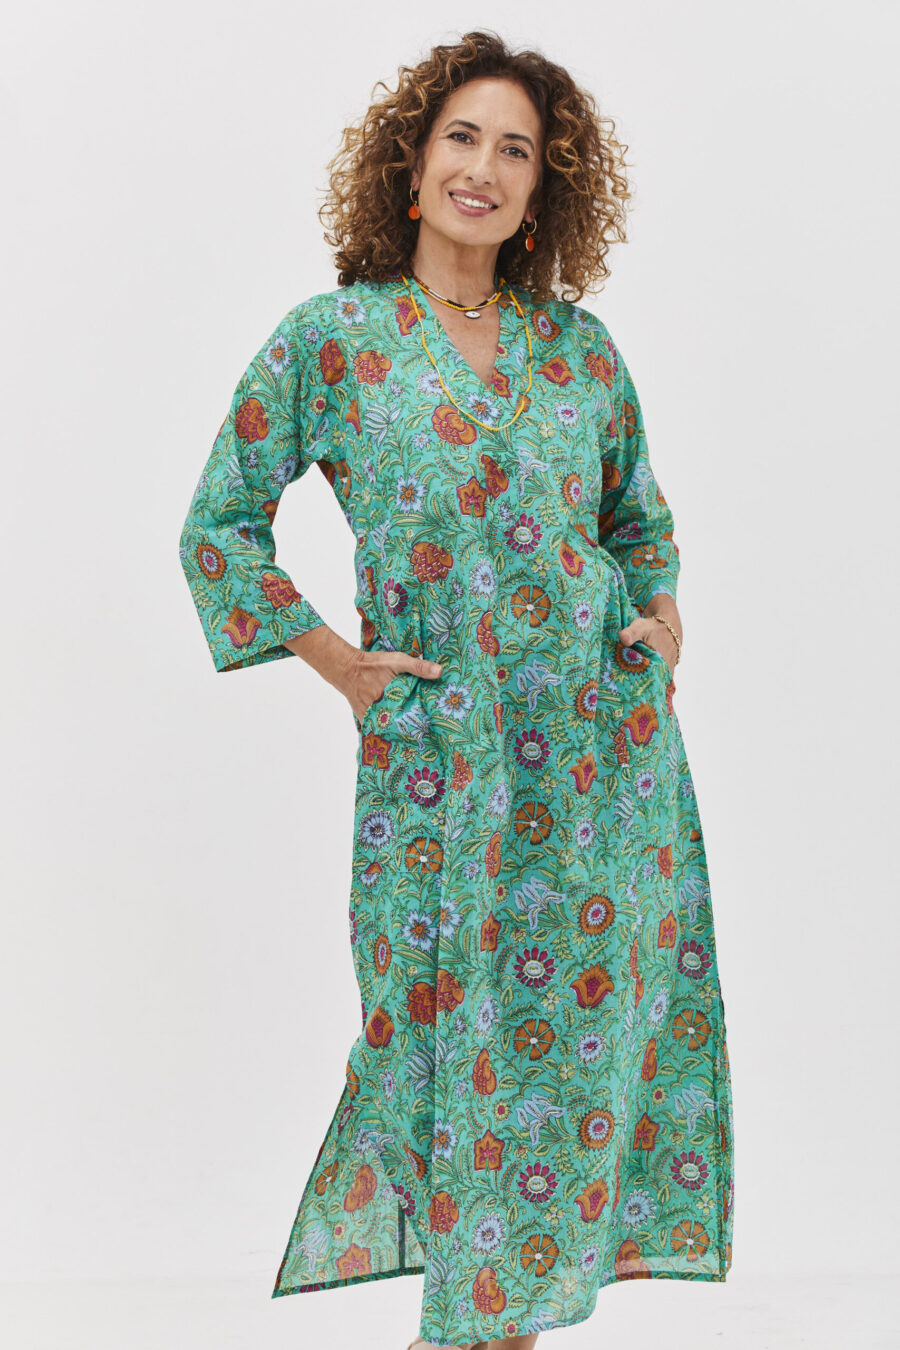 גלביה לנשים | גלבייה בעיצוב ייחודי – פרינט סימפוני, שמלה בצבע טורקיז ירקרק עם הדפס פרחוני צבעוני.